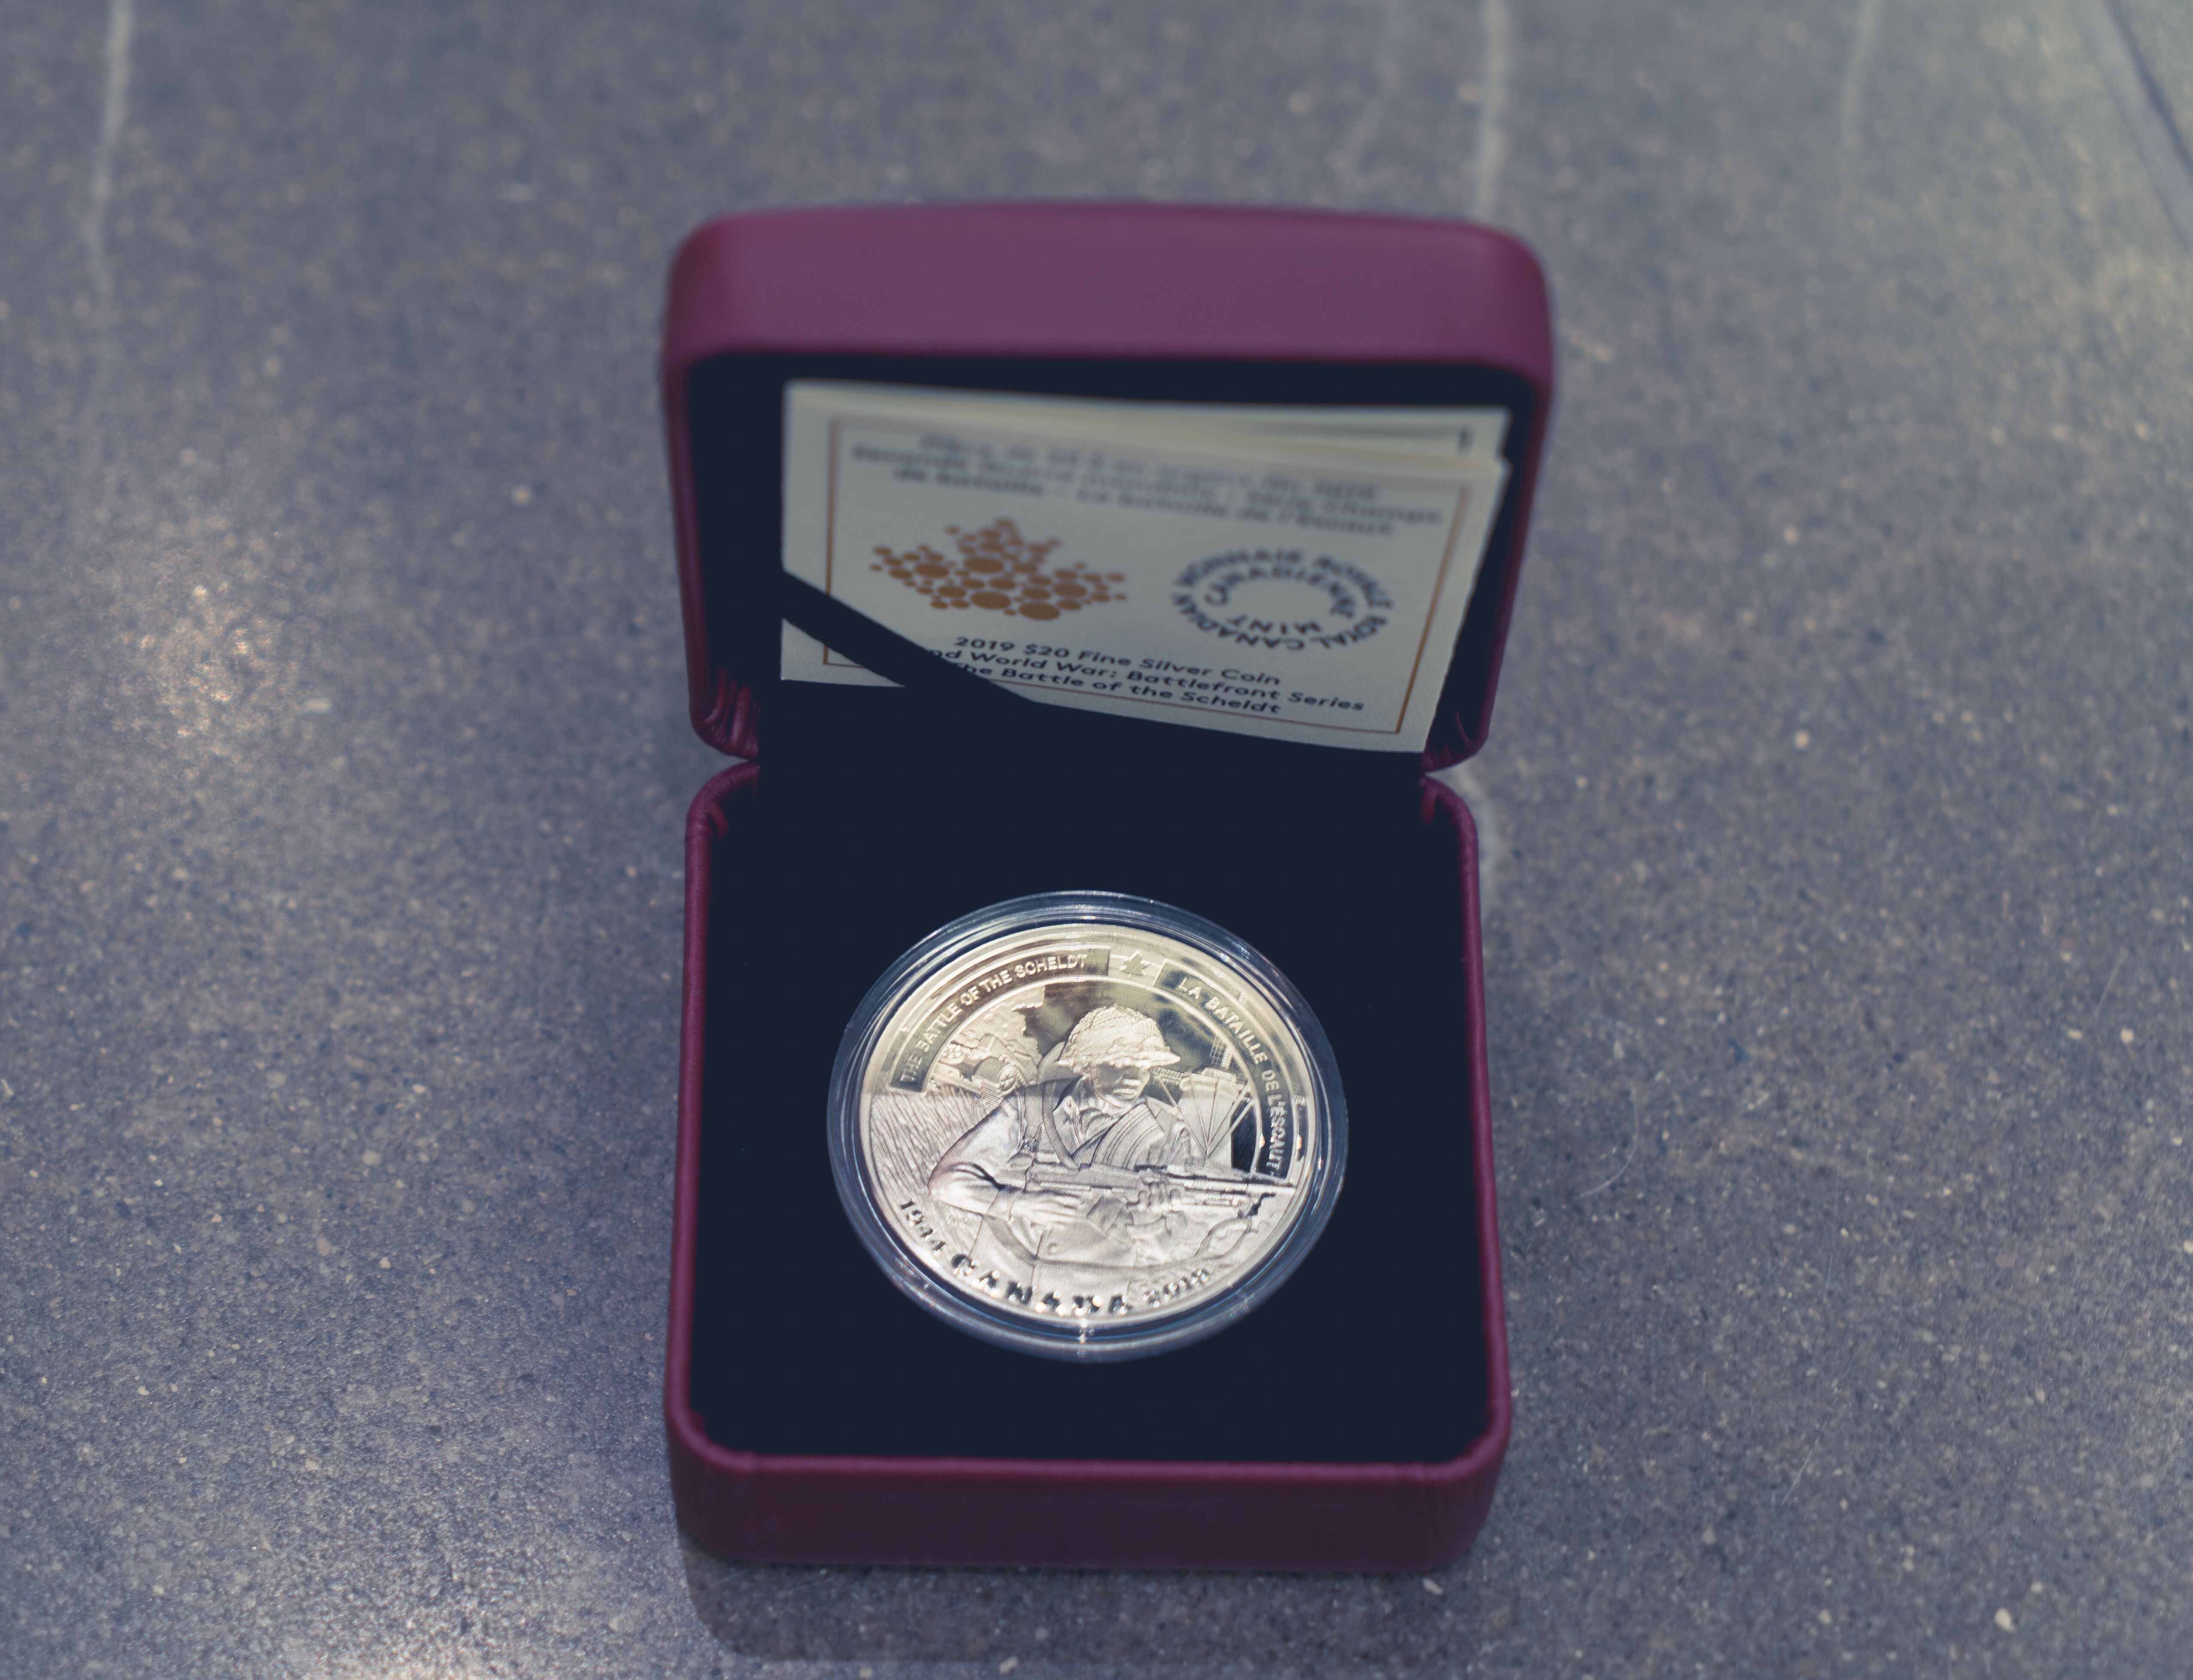 • Pièce de 20 dollars en argent fin de la Monnaie royale canadienne qui souligne le 75e anniversaire de la bataille de l’Escaut. 